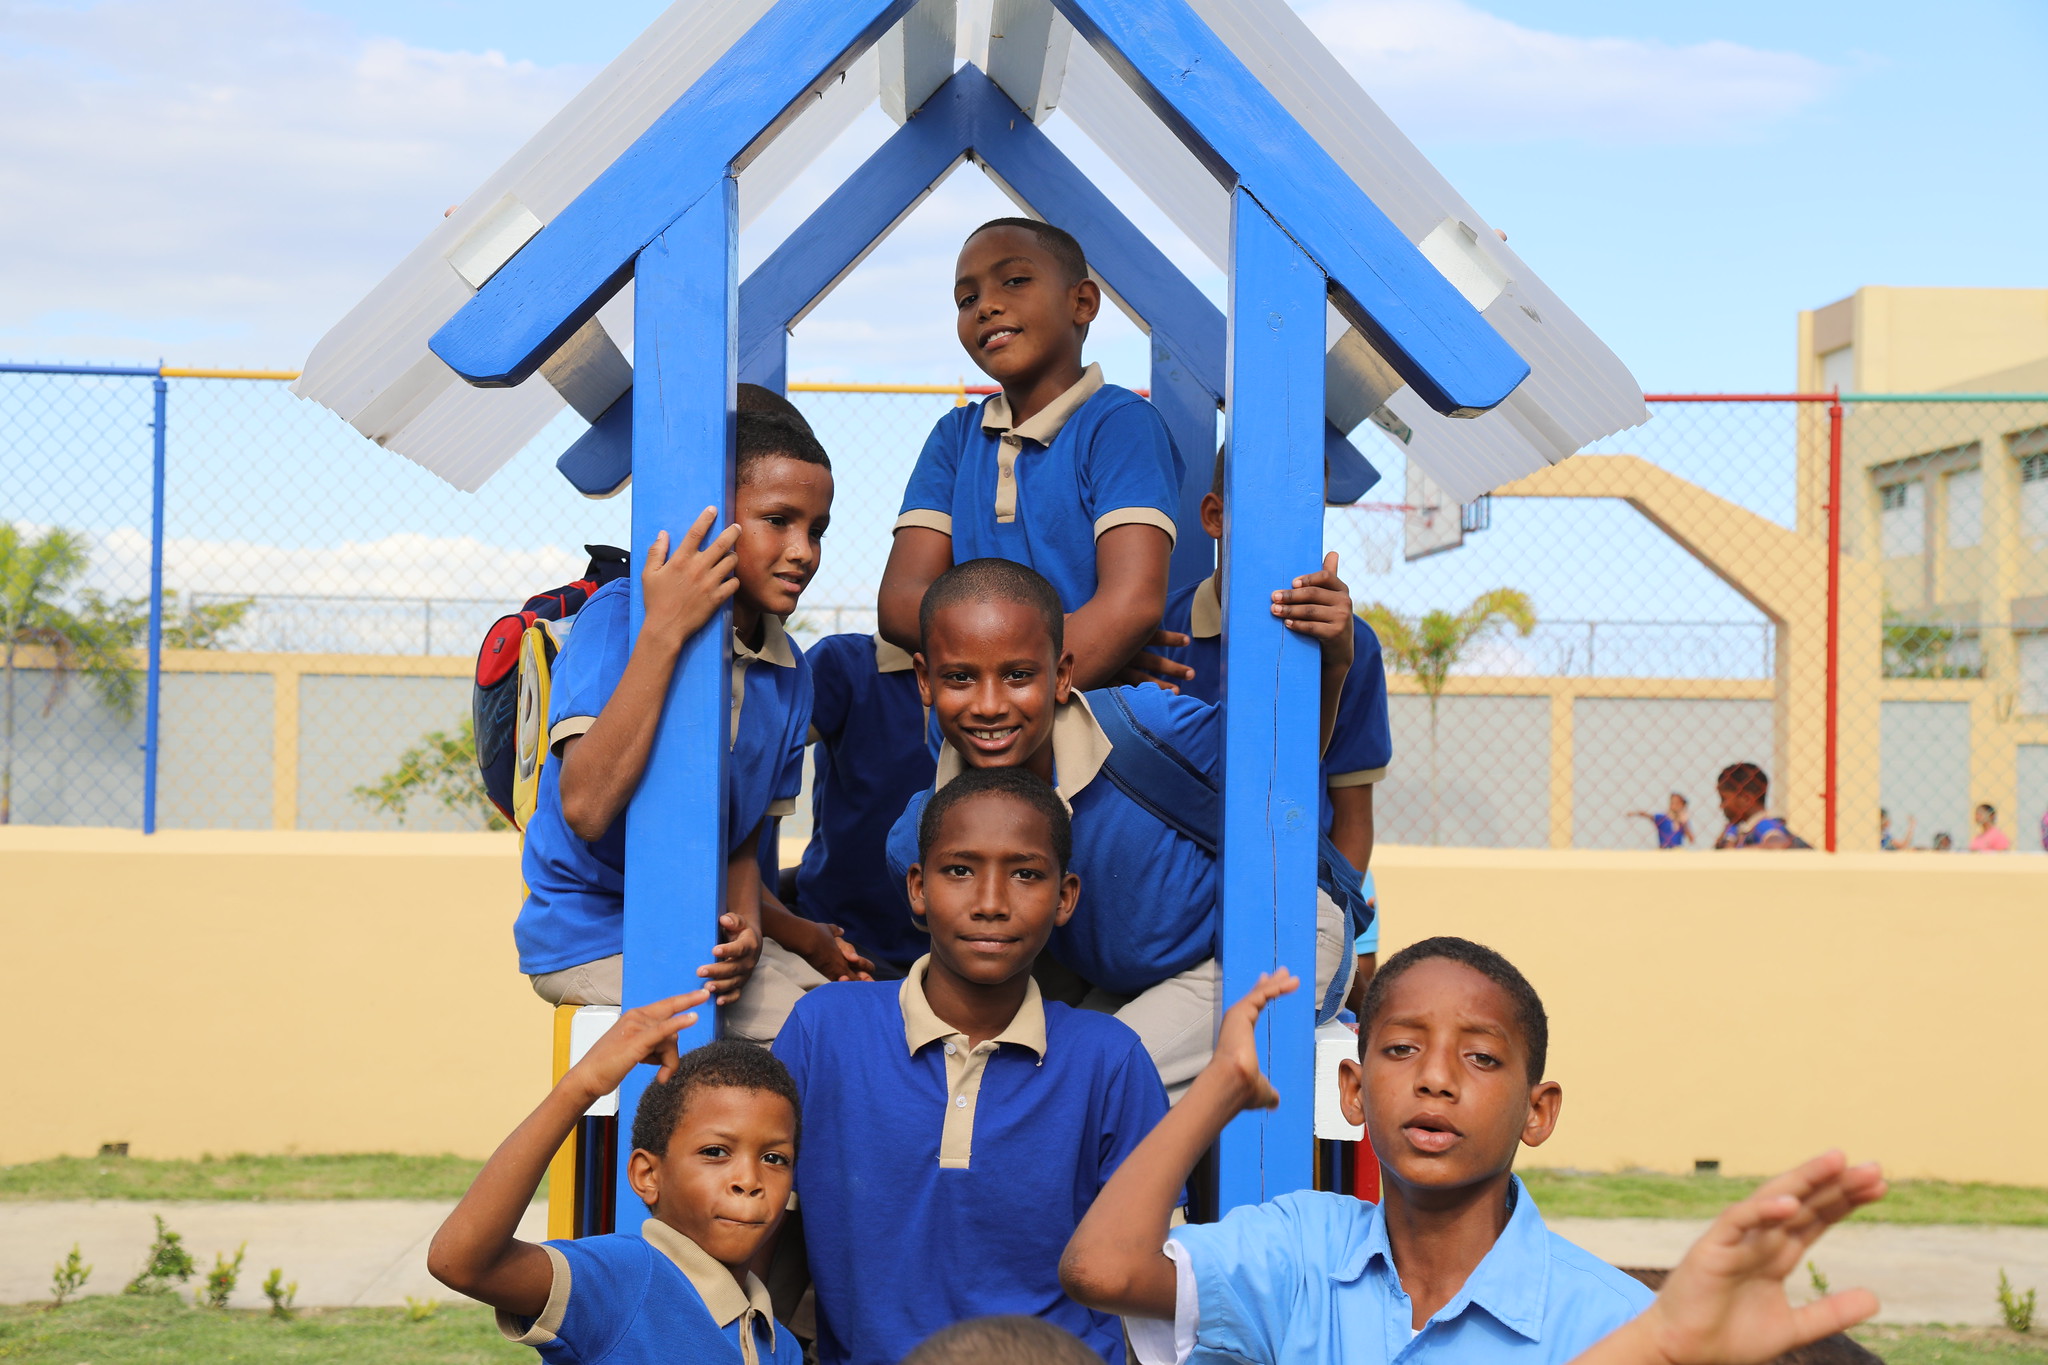 REPÚBLICA DOMINICANA: Haina recibe un nuevo centro educativo en beneficio de 805 estudiantes; presidente Danilo Medina encabeza acto